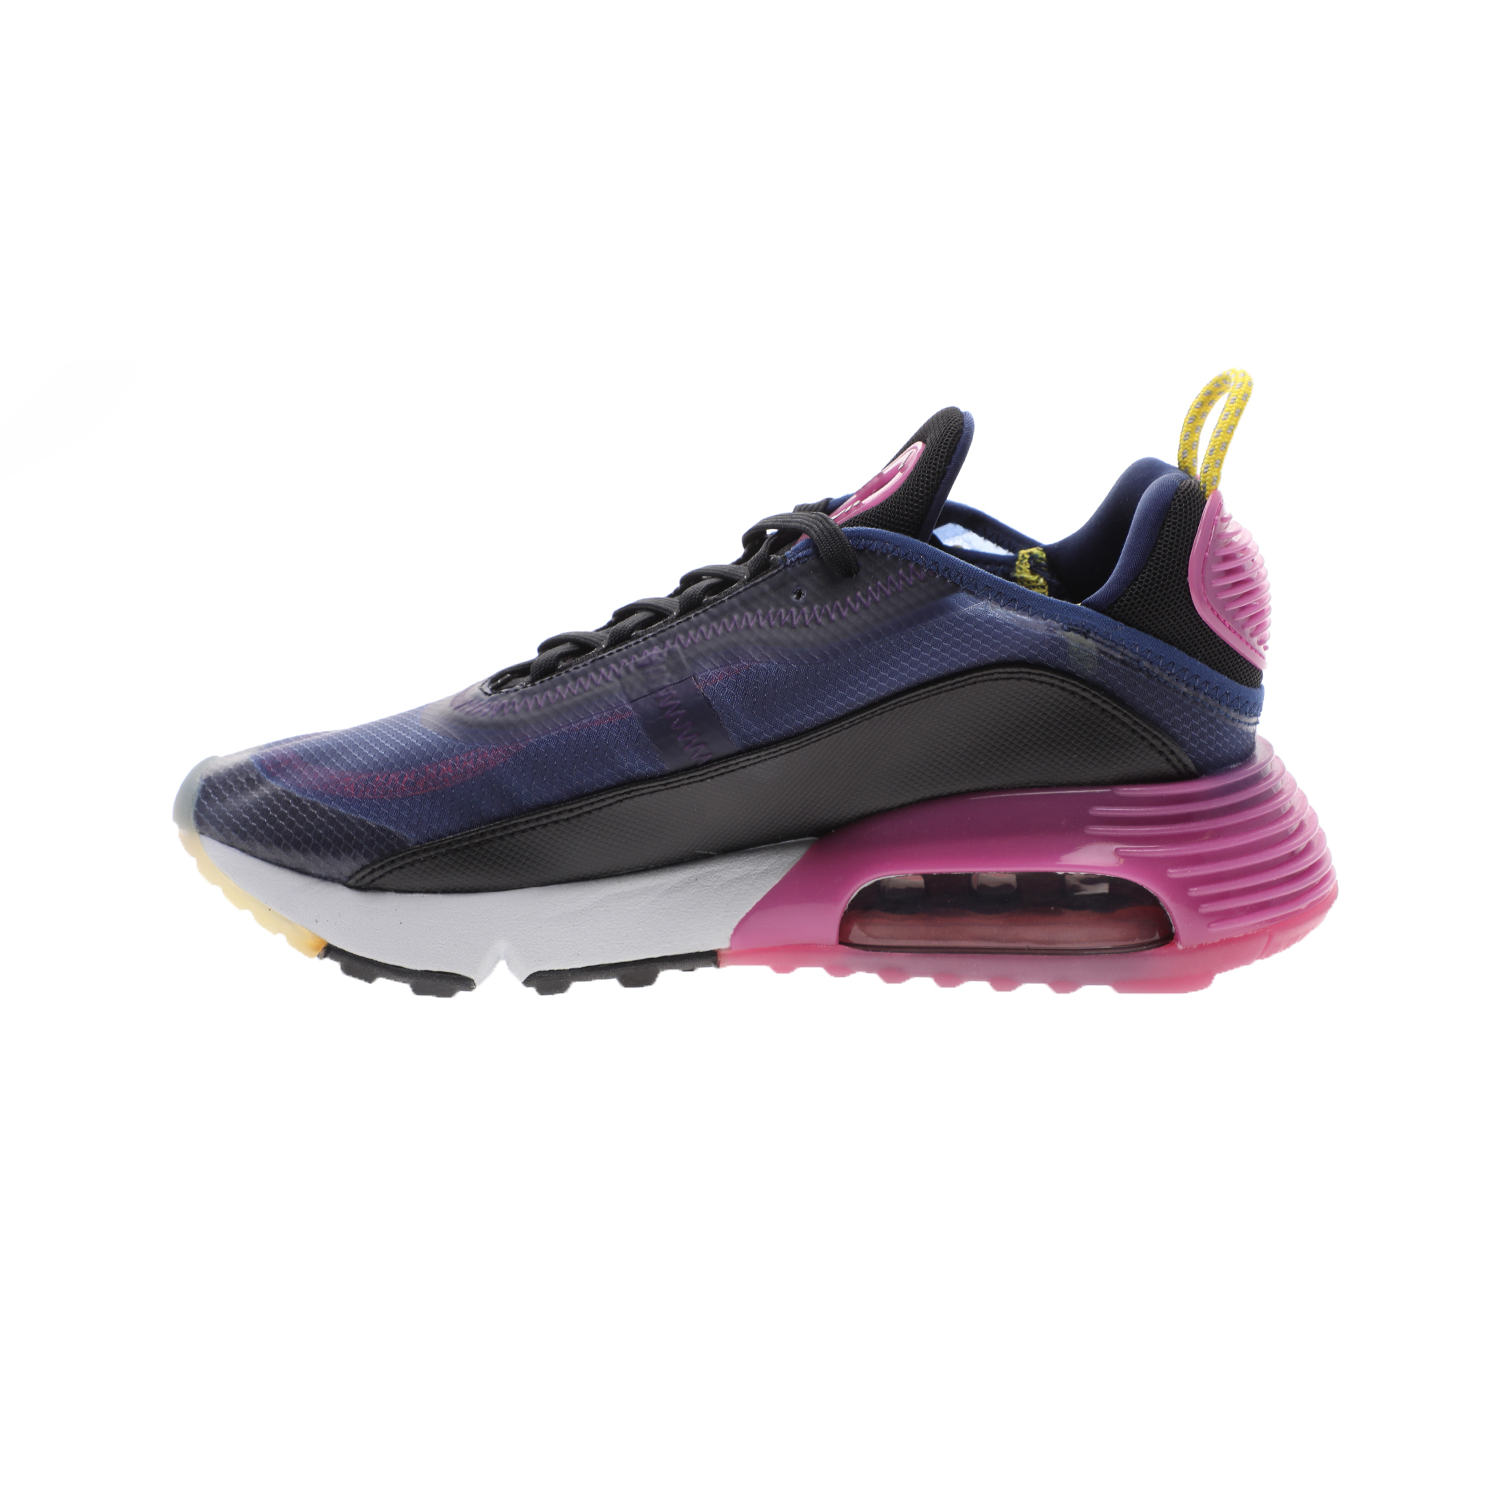 Γυναικεία/Παπούτσια/Αθλητικά/Running NIKE - Γυναικεία παπούτσια running ΝΙΚΕ AIR MAX 2090 μπλε